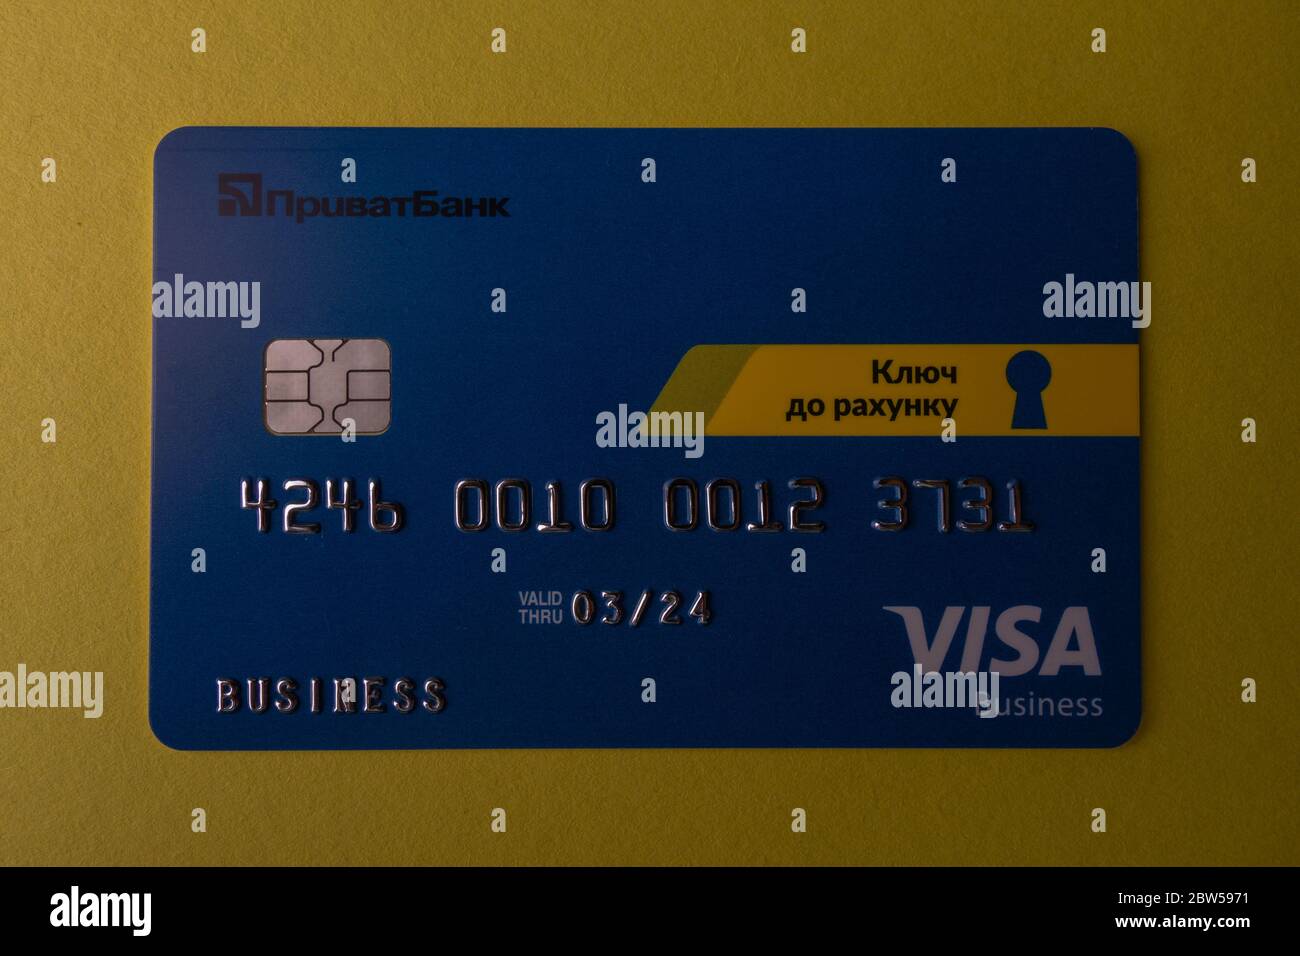 Carte bancaire Visa de la banque ukrainienne Privatbank. Odessa. Ukraine. 2020.04.28. Banque D'Images